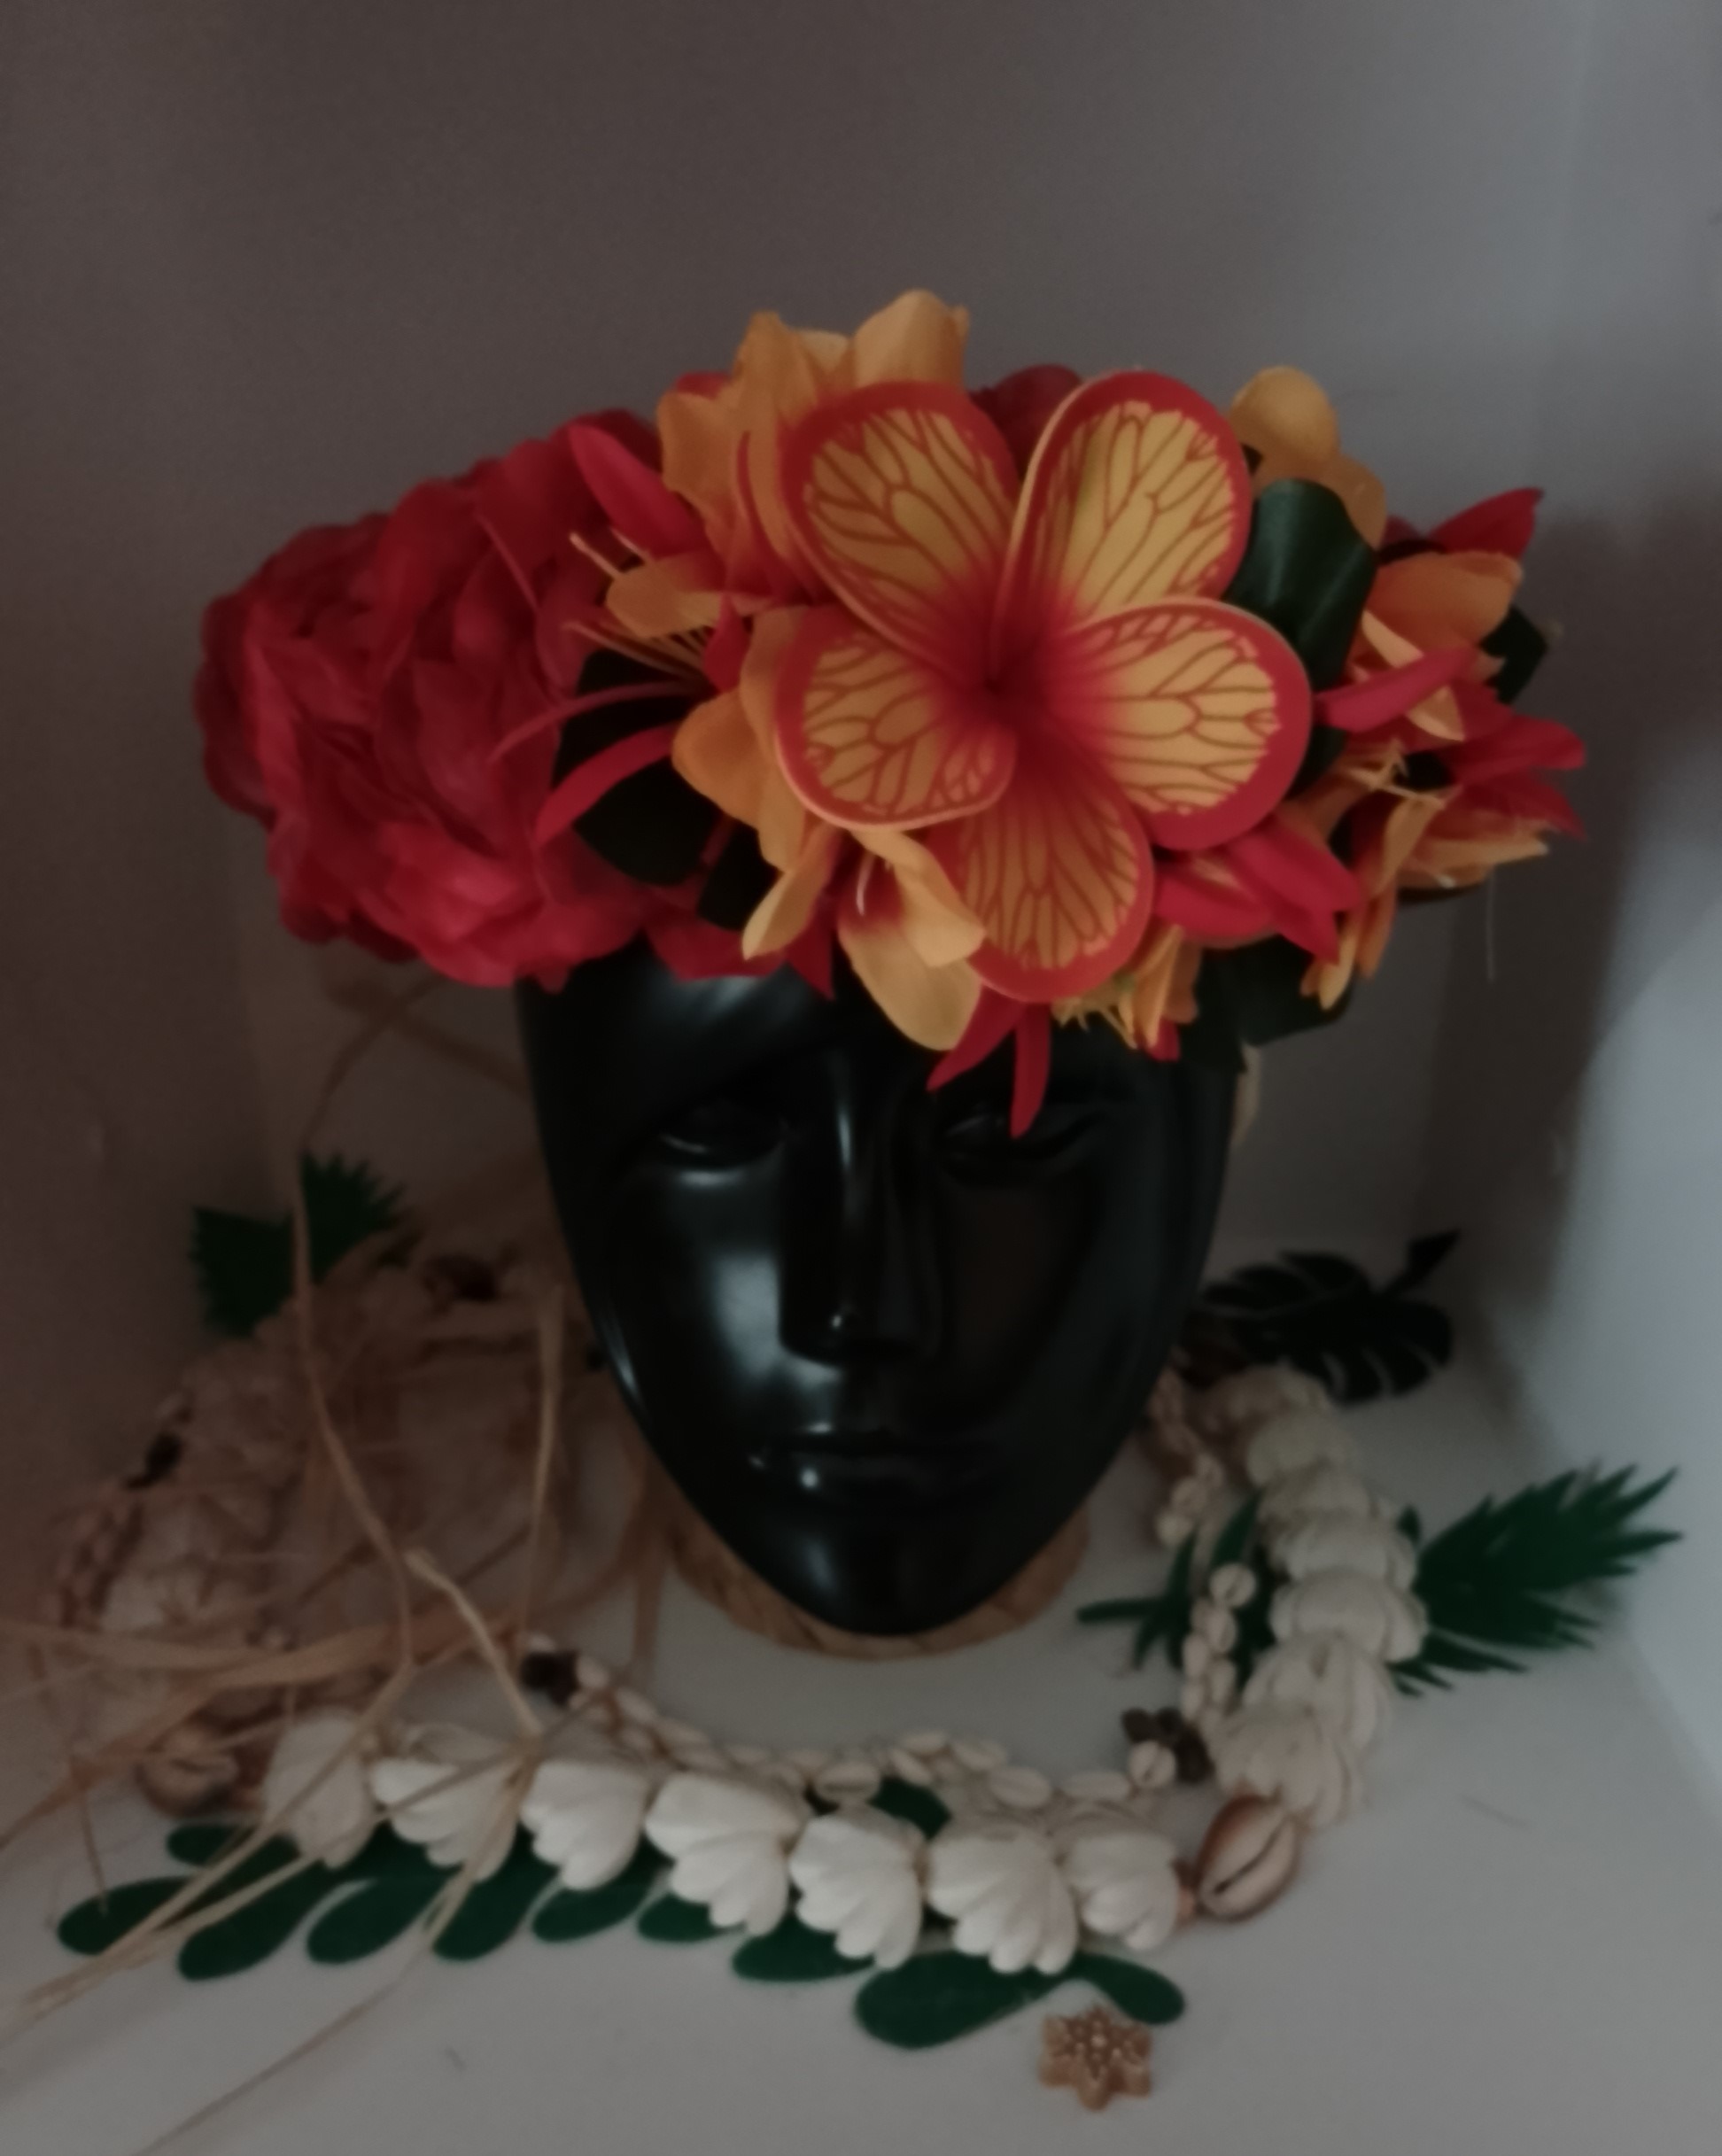 couronne de tête avec fleurs tahitiennes rouge avec lys moyens rouges et lys élancés orangés by Vaite.e.Tiare créations